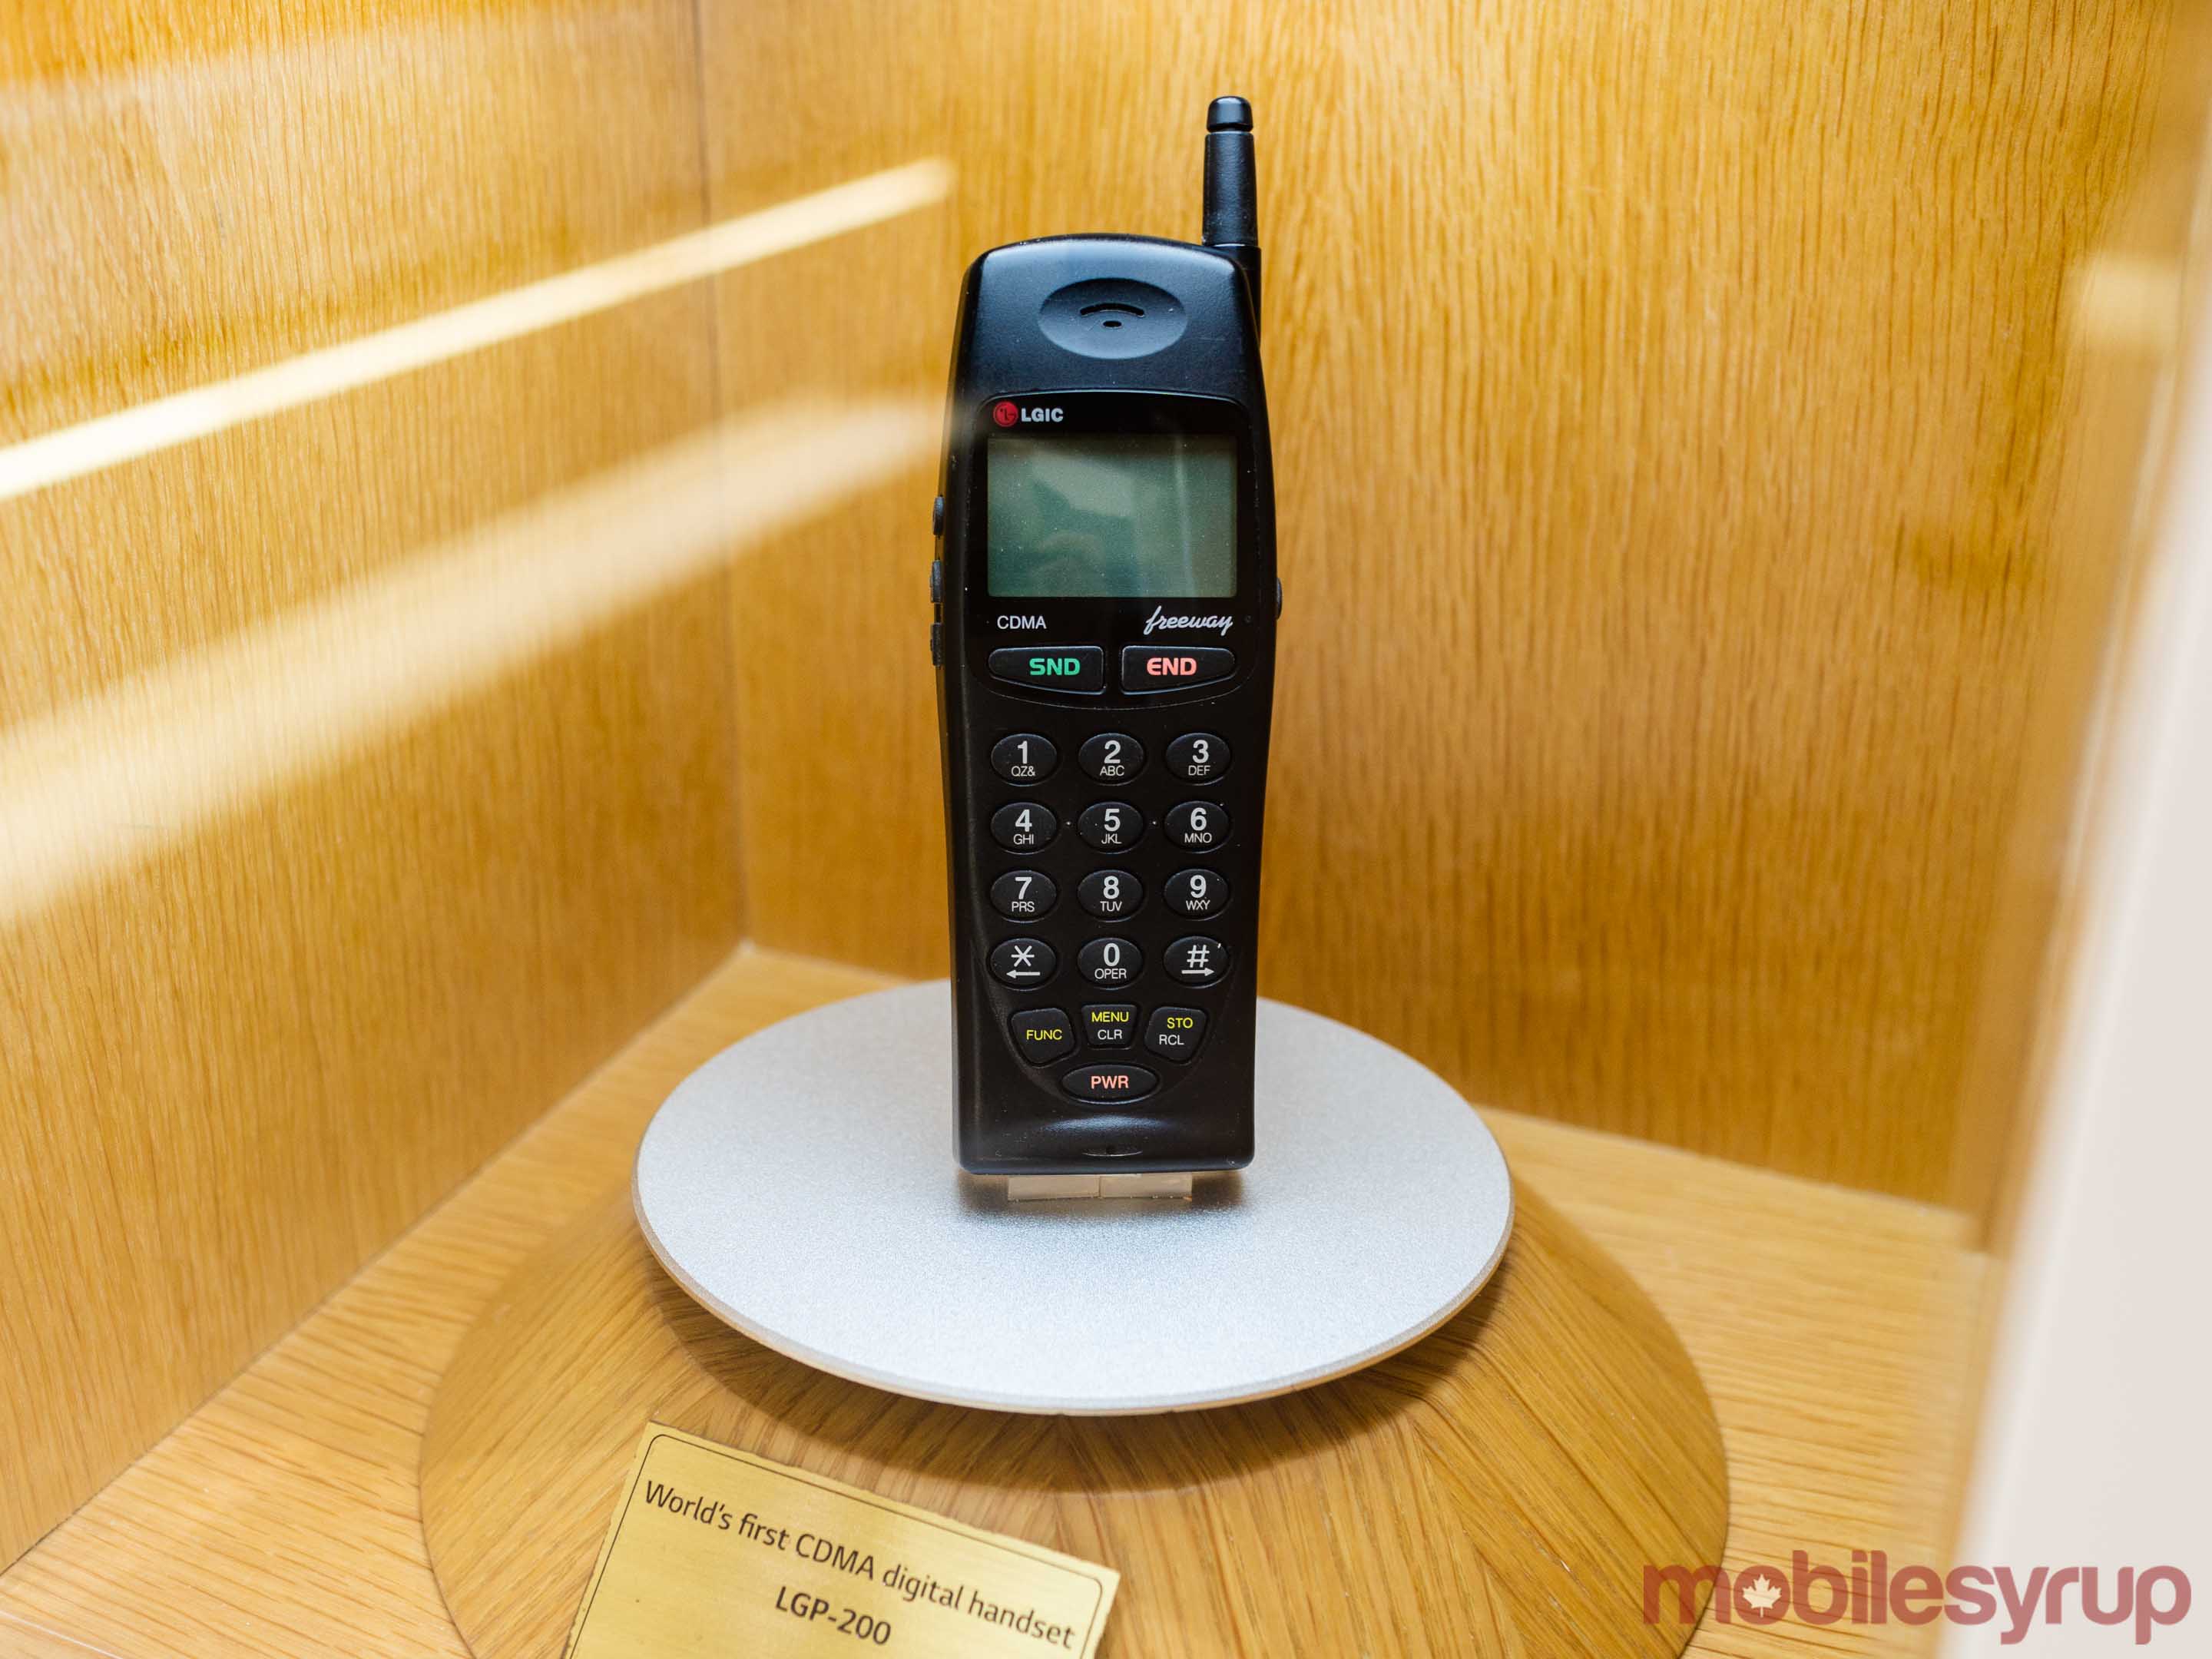 LGP-200 feature phone